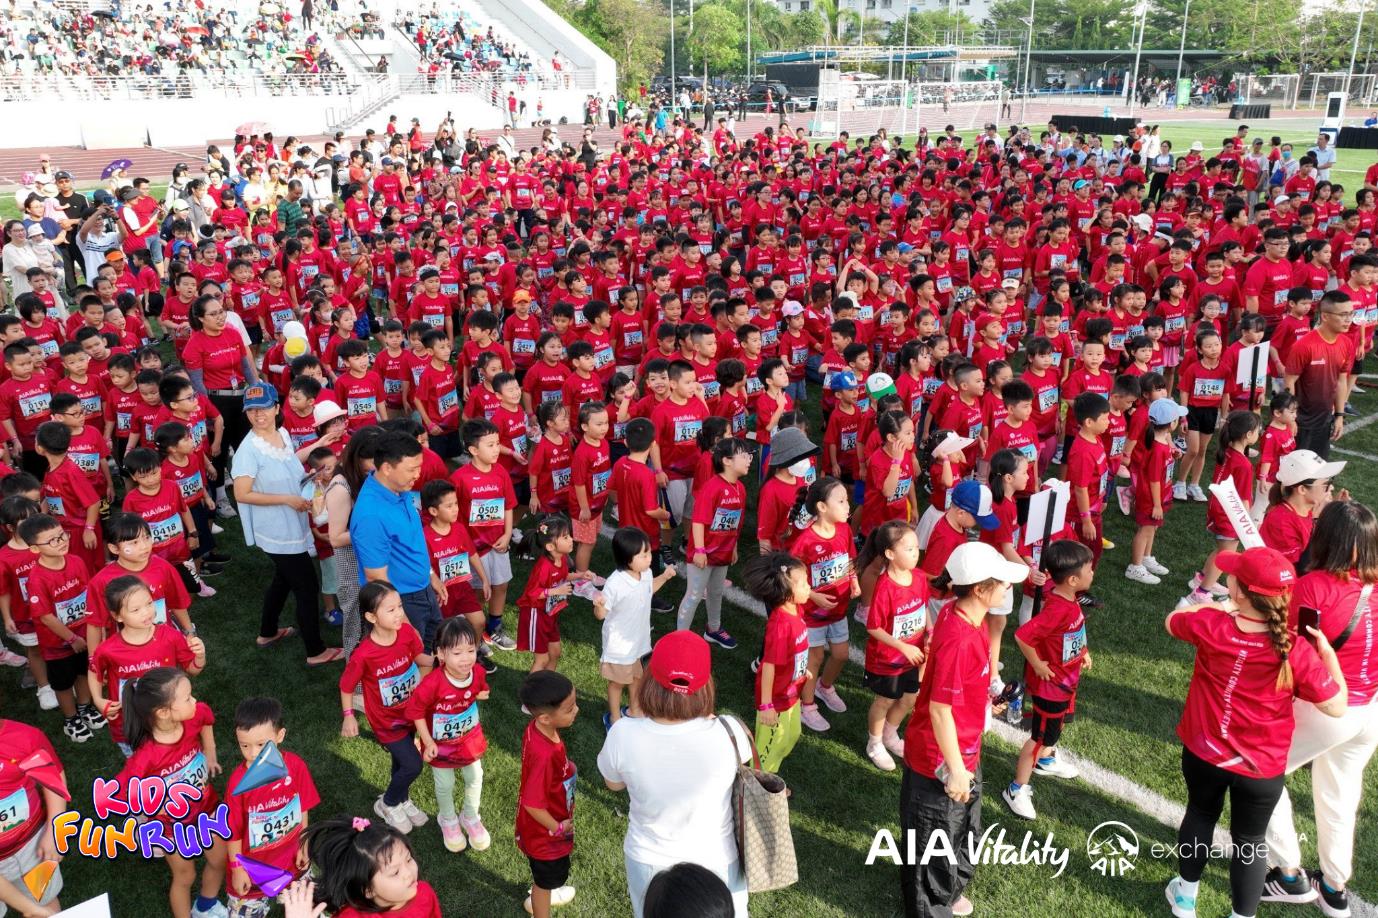 AIA Việt Nam mang đến sân chơi bổ ích cho các em nhỏ thông qua chuỗi sự kiện "Kids Fun Run"- Ảnh 1.